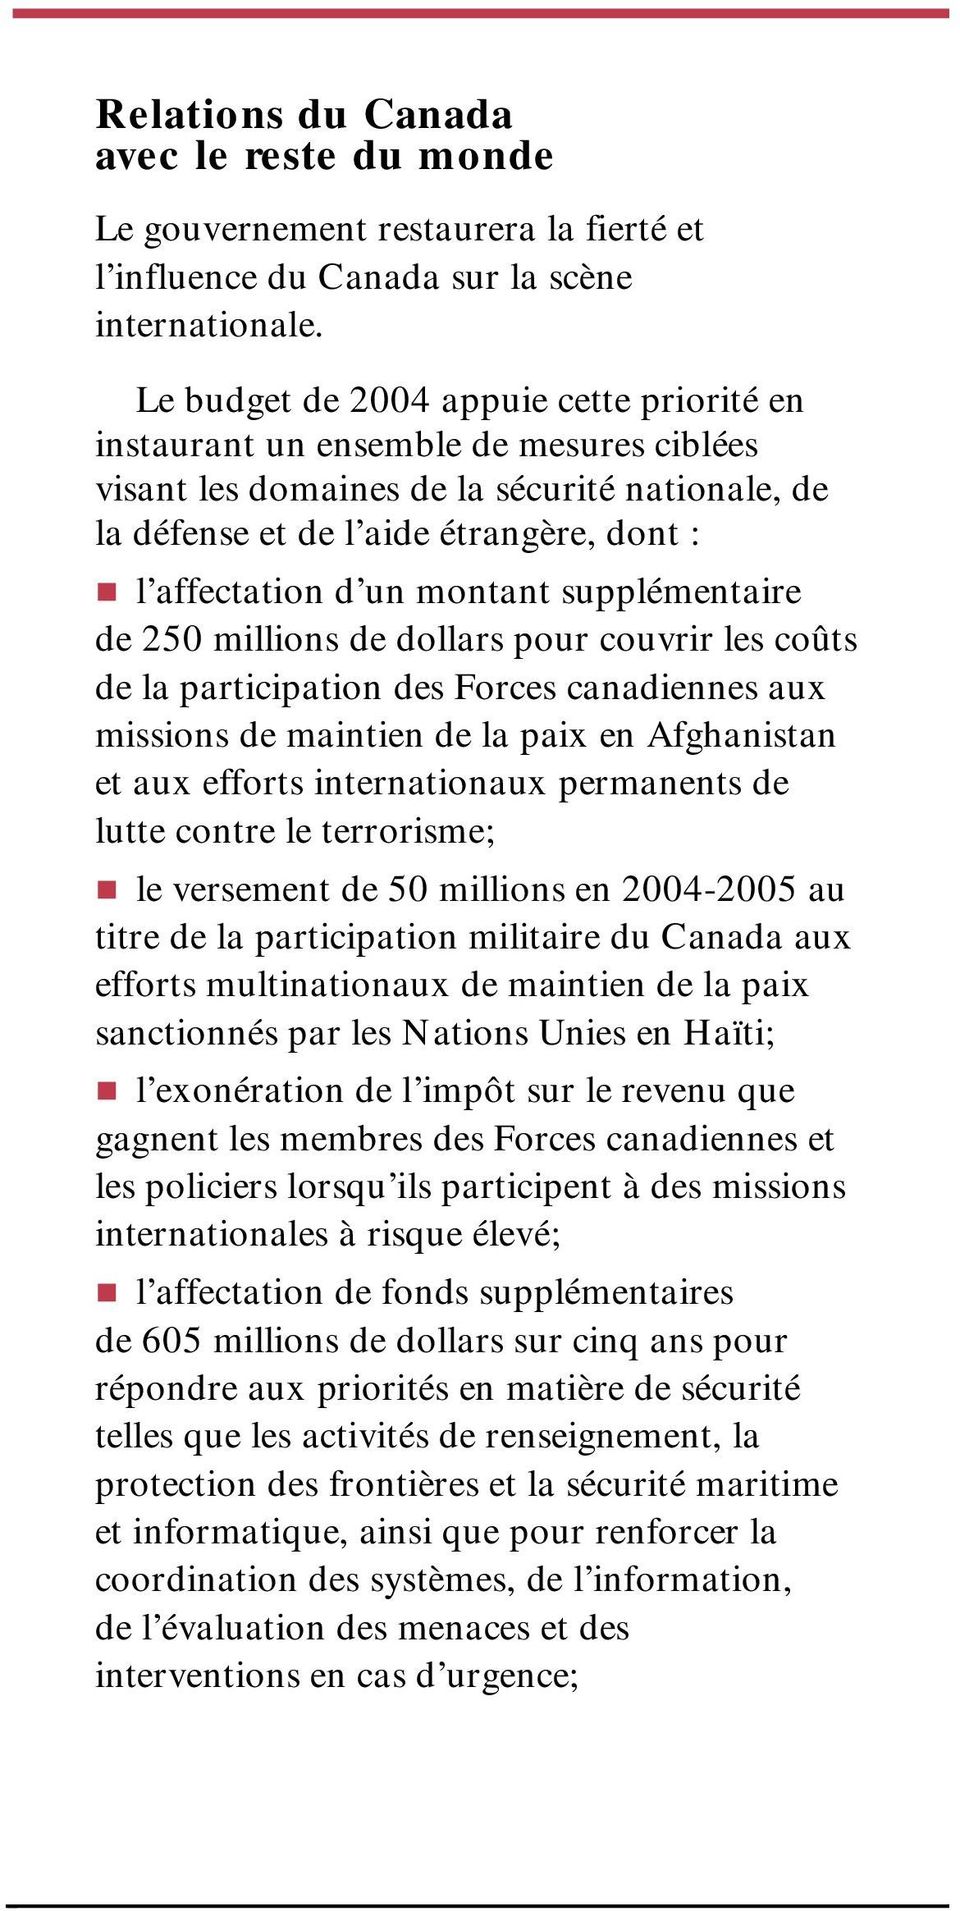 montant supplémentaire de 250 millions de dollars pour couvrir les coûts de la participation des Forces canadiennes aux missions de maintien de la paix en Afghanistan et aux efforts internationaux